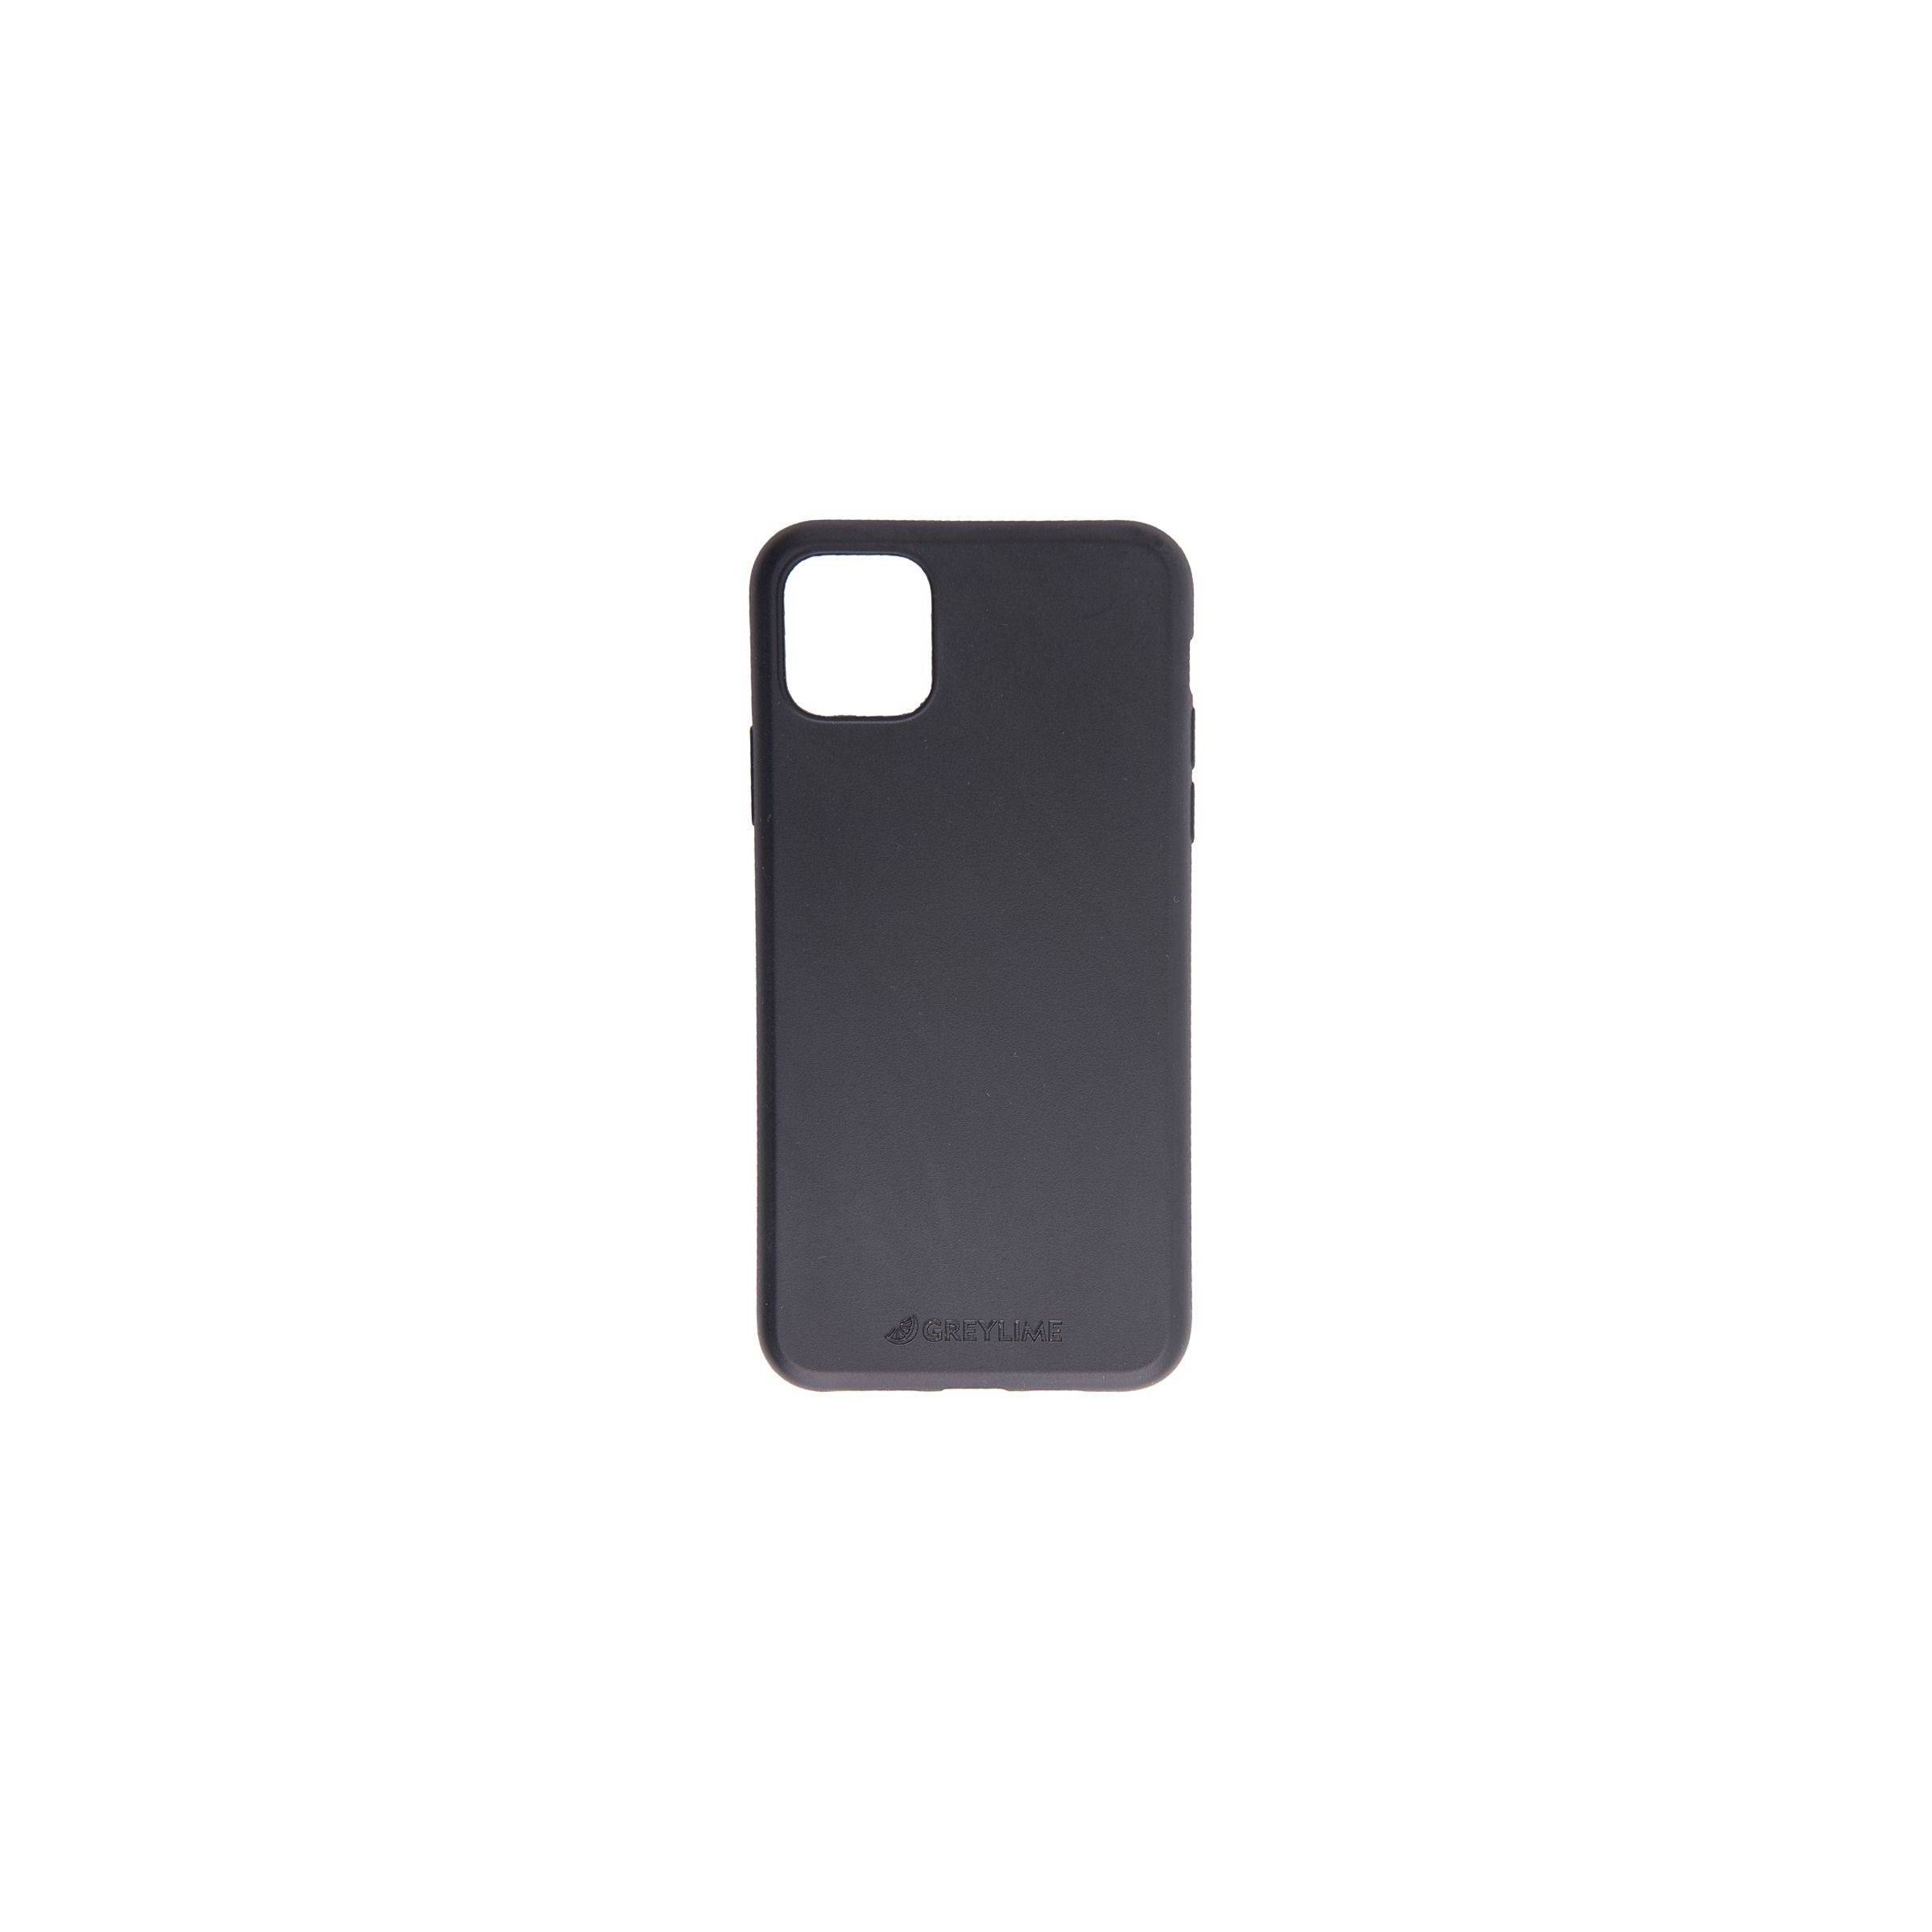 Bilde av Iphone 11 Pro Biodegradable Cover Greylime, Farge Sort